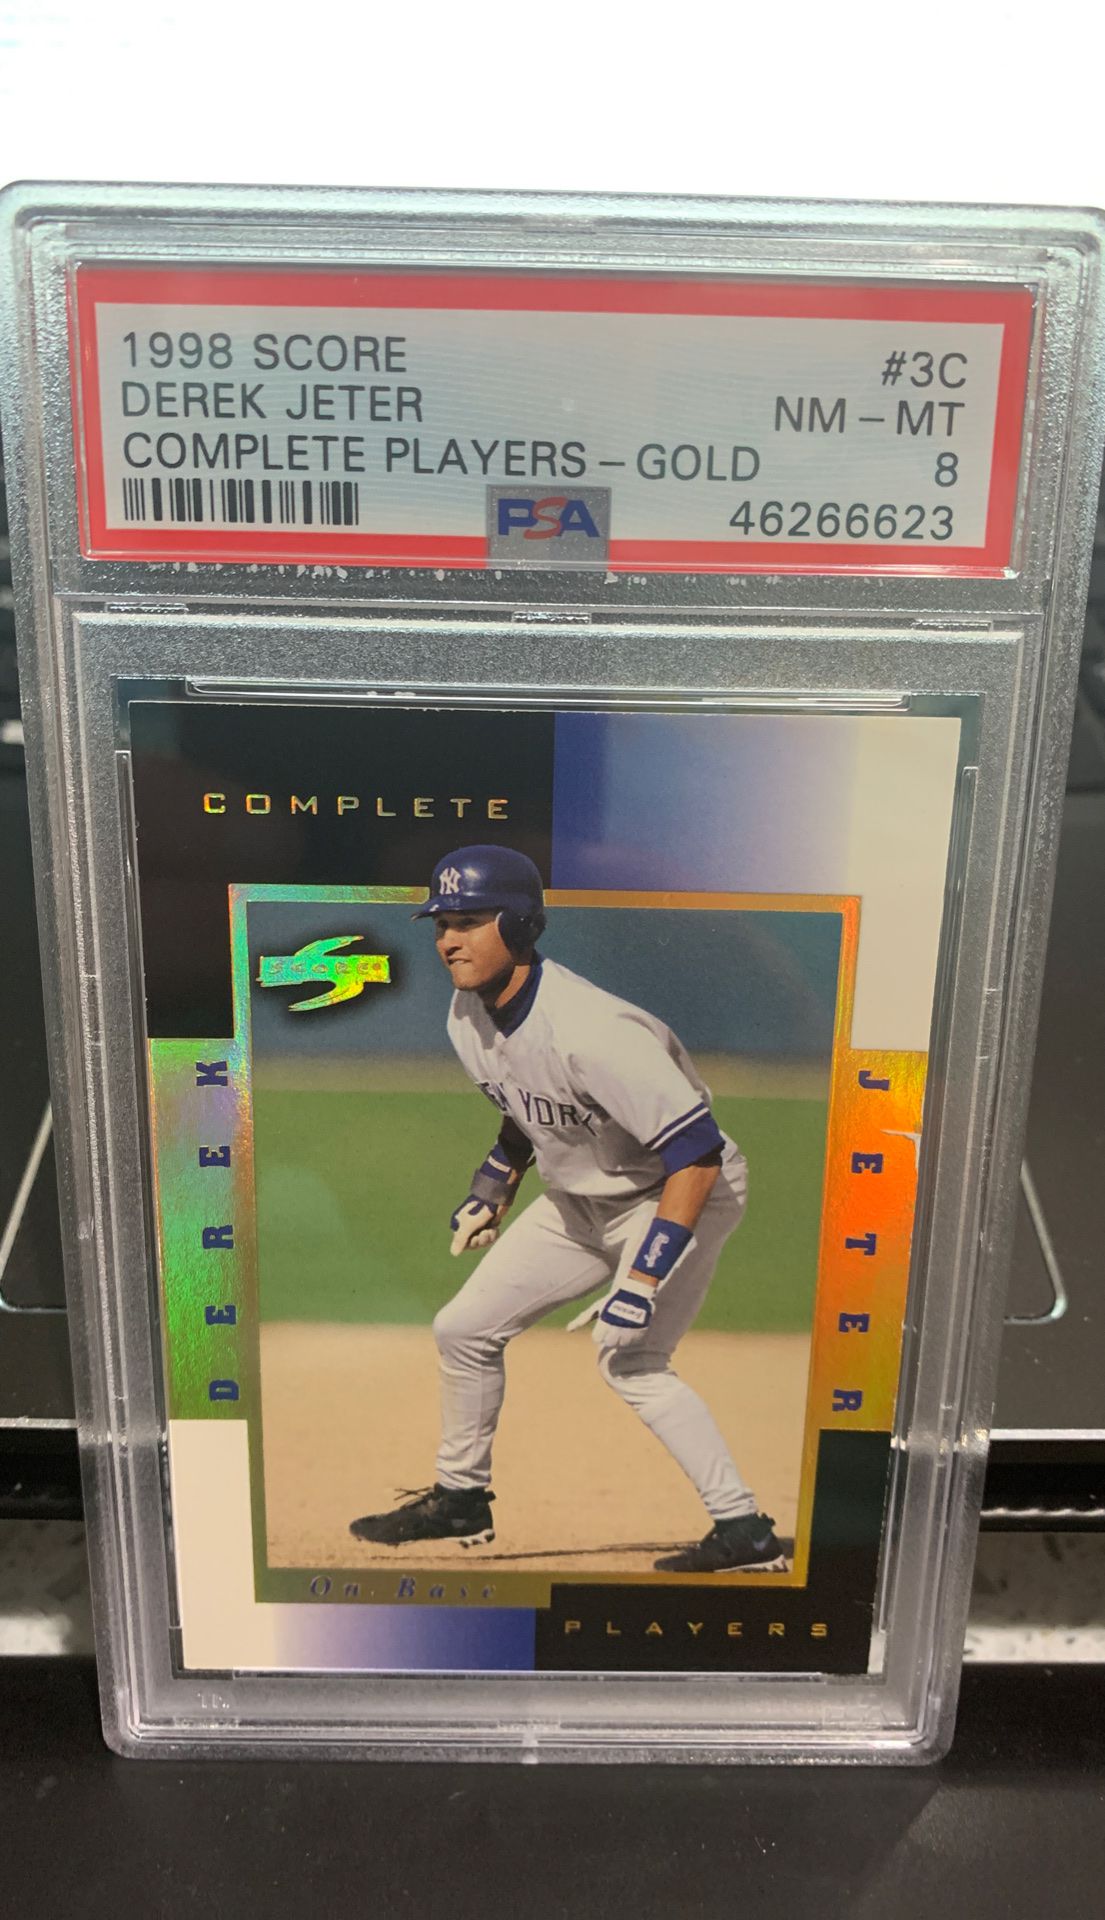 Rare Derek Jeter graded baseball card